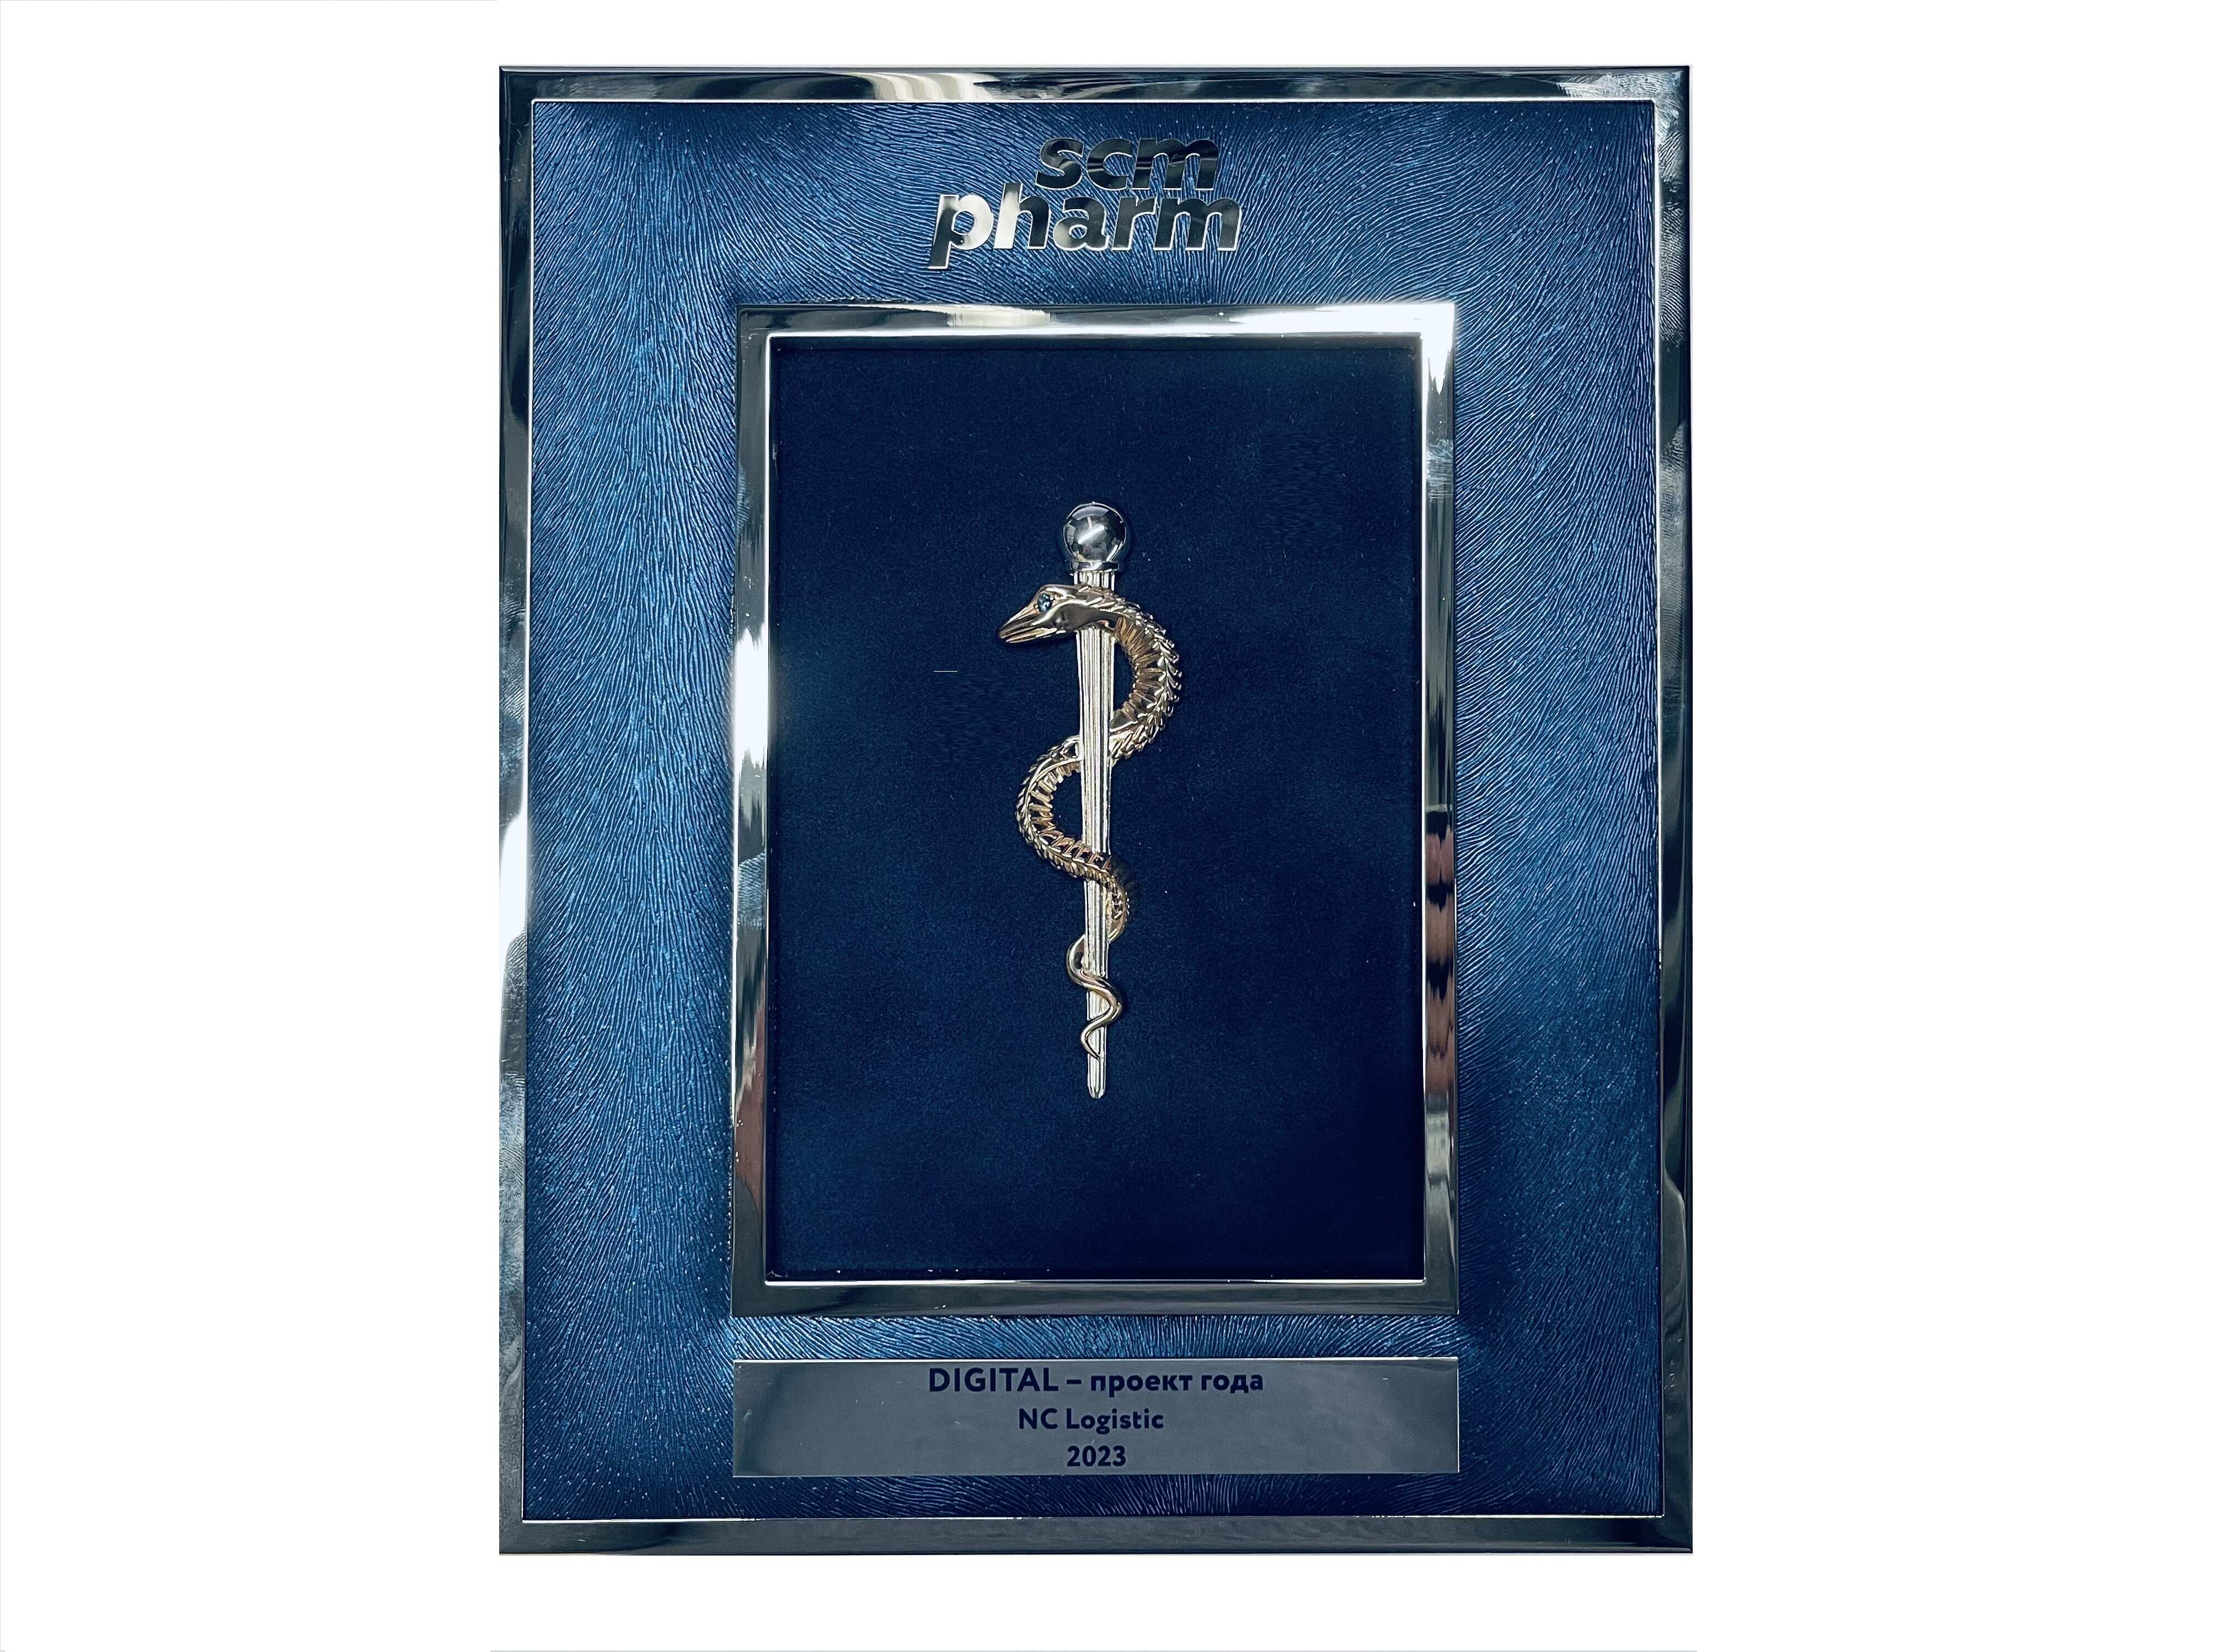 NC Logistic победил в номинации «Digital-проект года» премии SCM Pharm